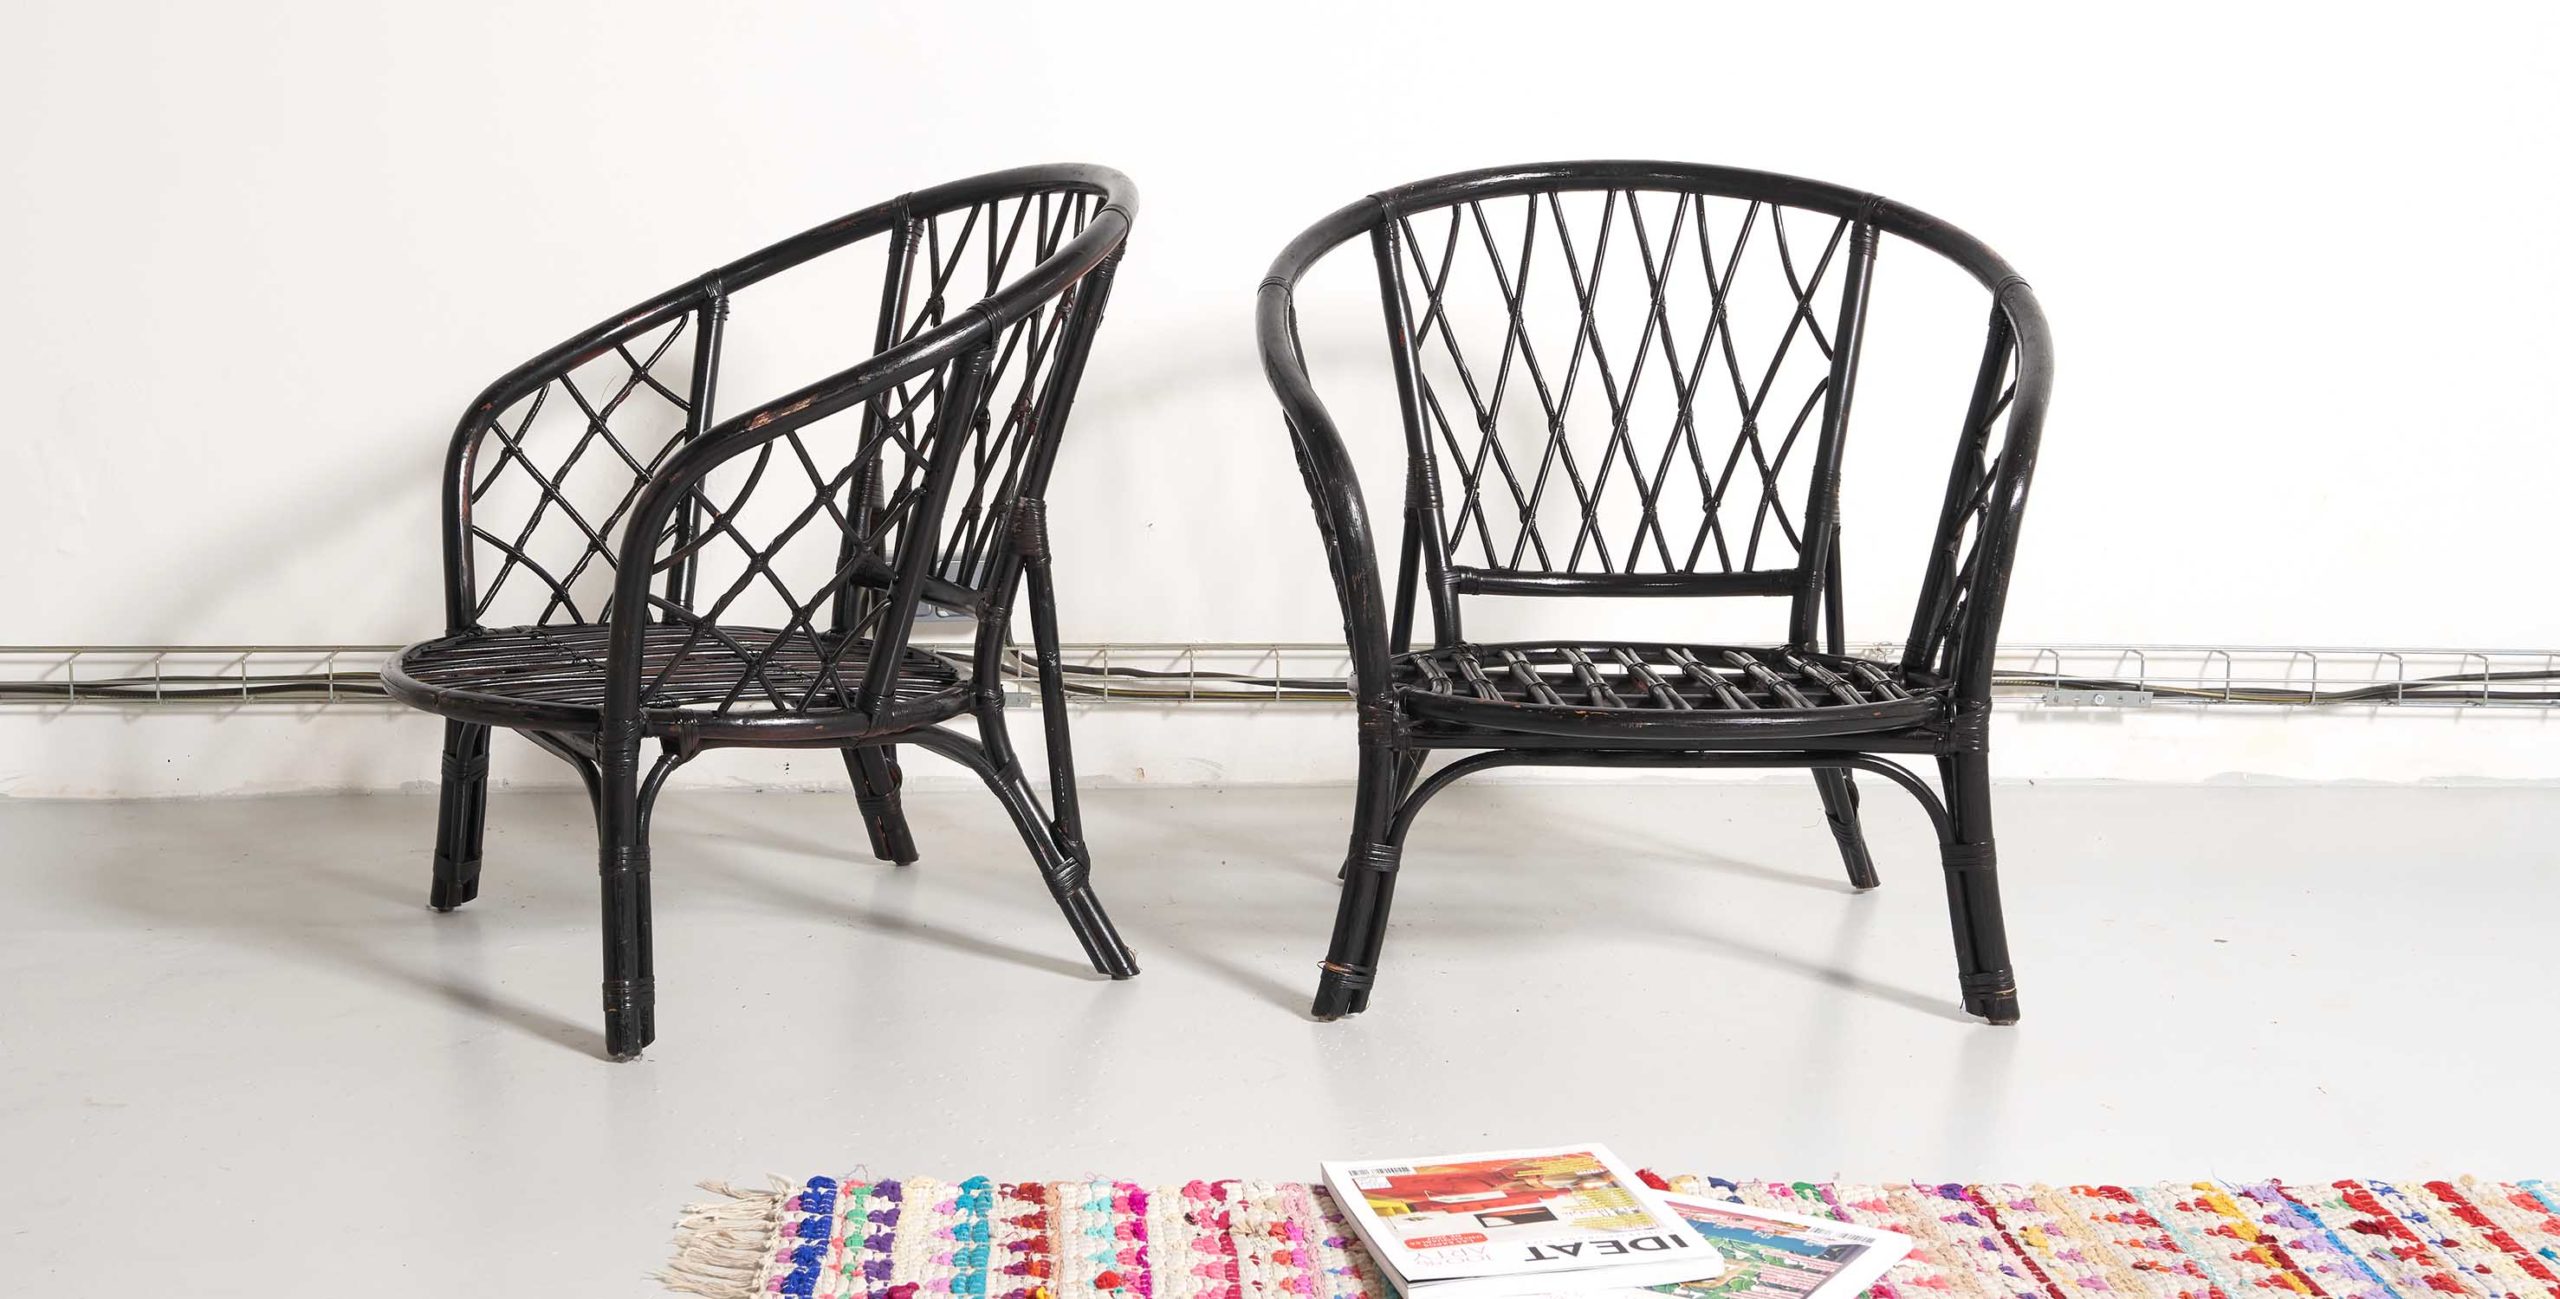 fauteuil noir vintage, fauteuil rotin, fauteuil rotin vintage, fauteuil bambou vintage, fauteuil noir vintage, fauteuil rotin noir, enfilade vintage, mobilier vintage